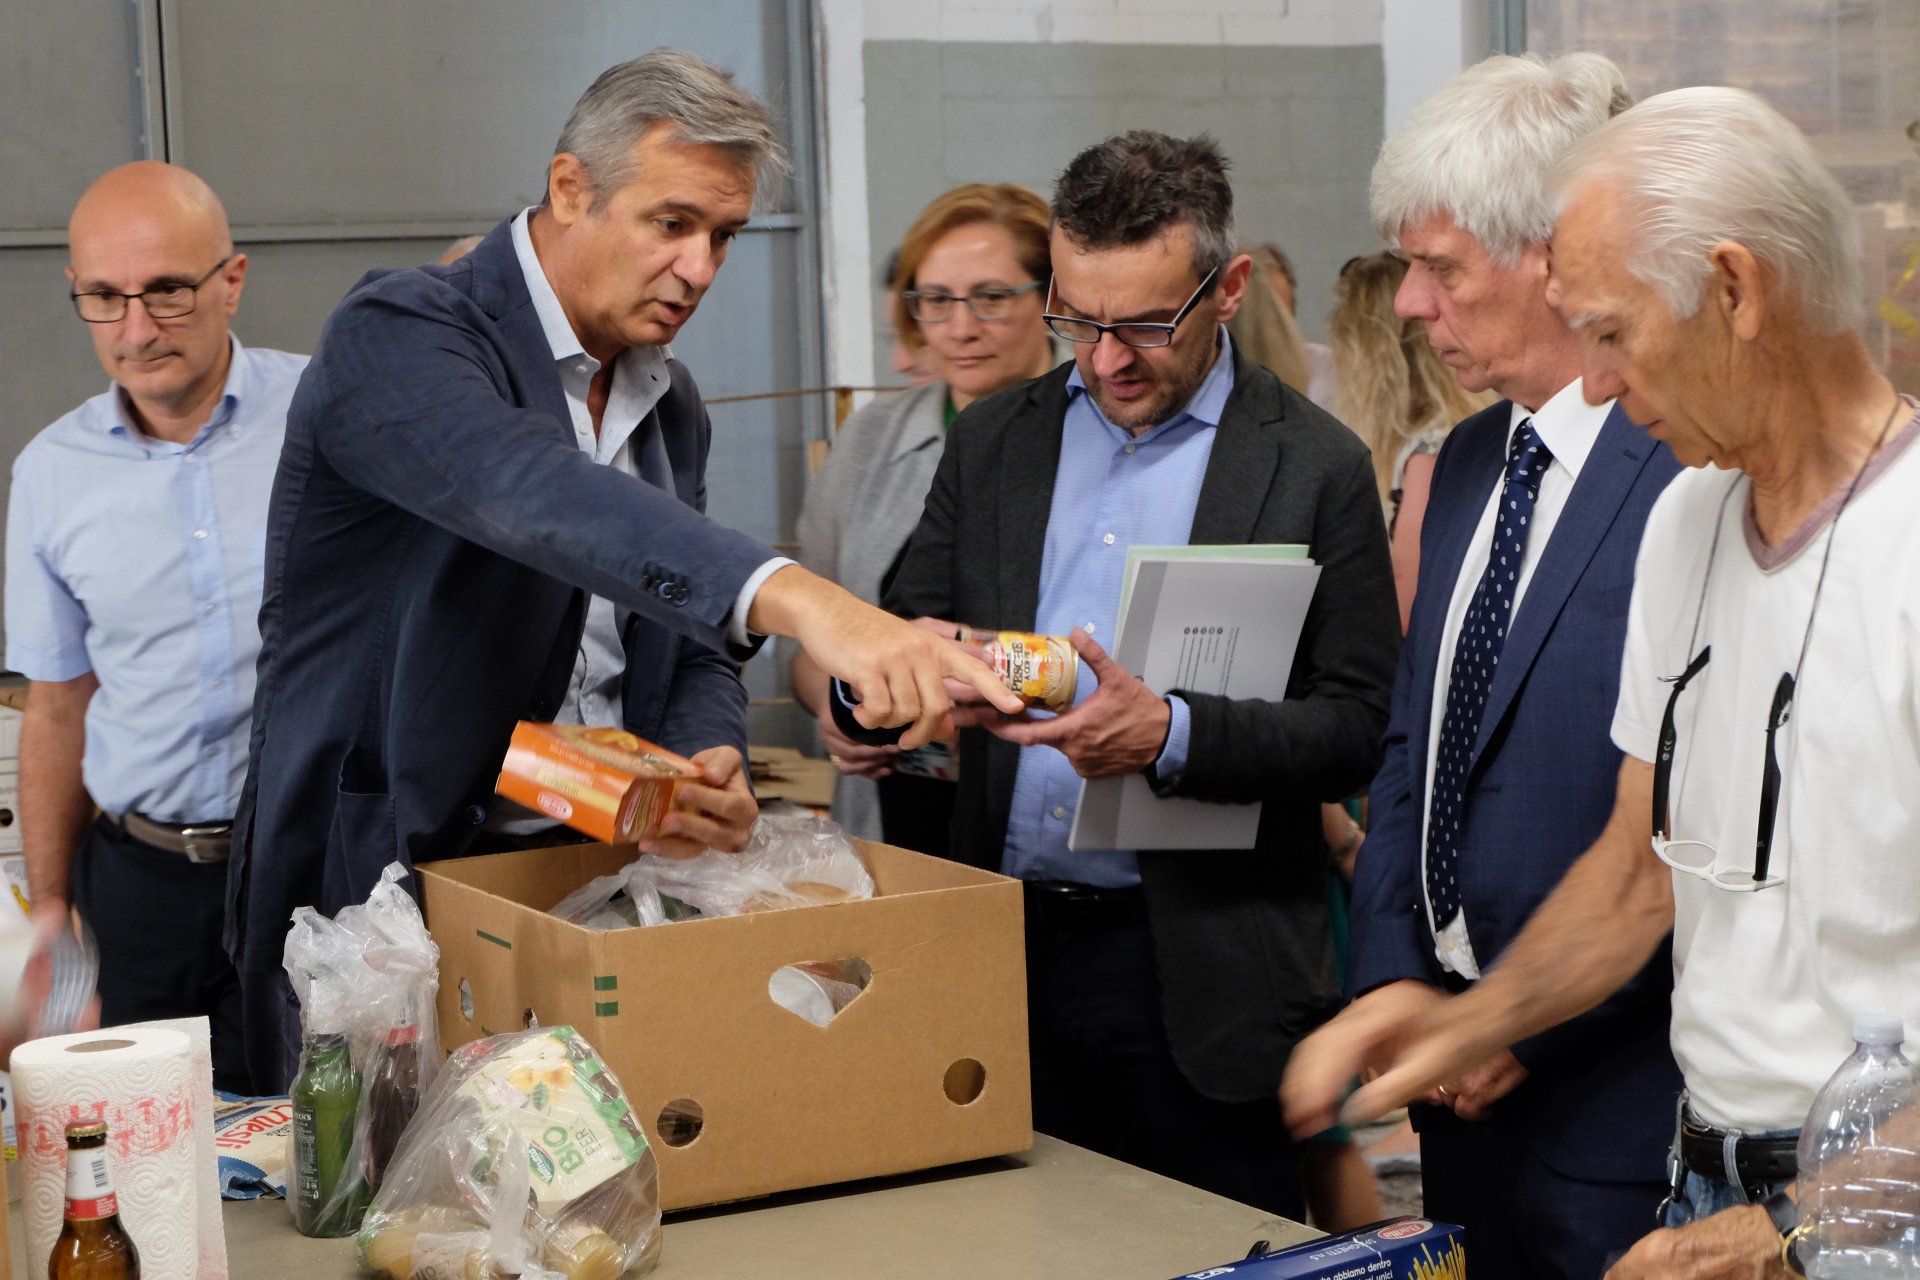 Le foto della visita dell'assessore regionale Stefano Bolognini al Banco alimentare